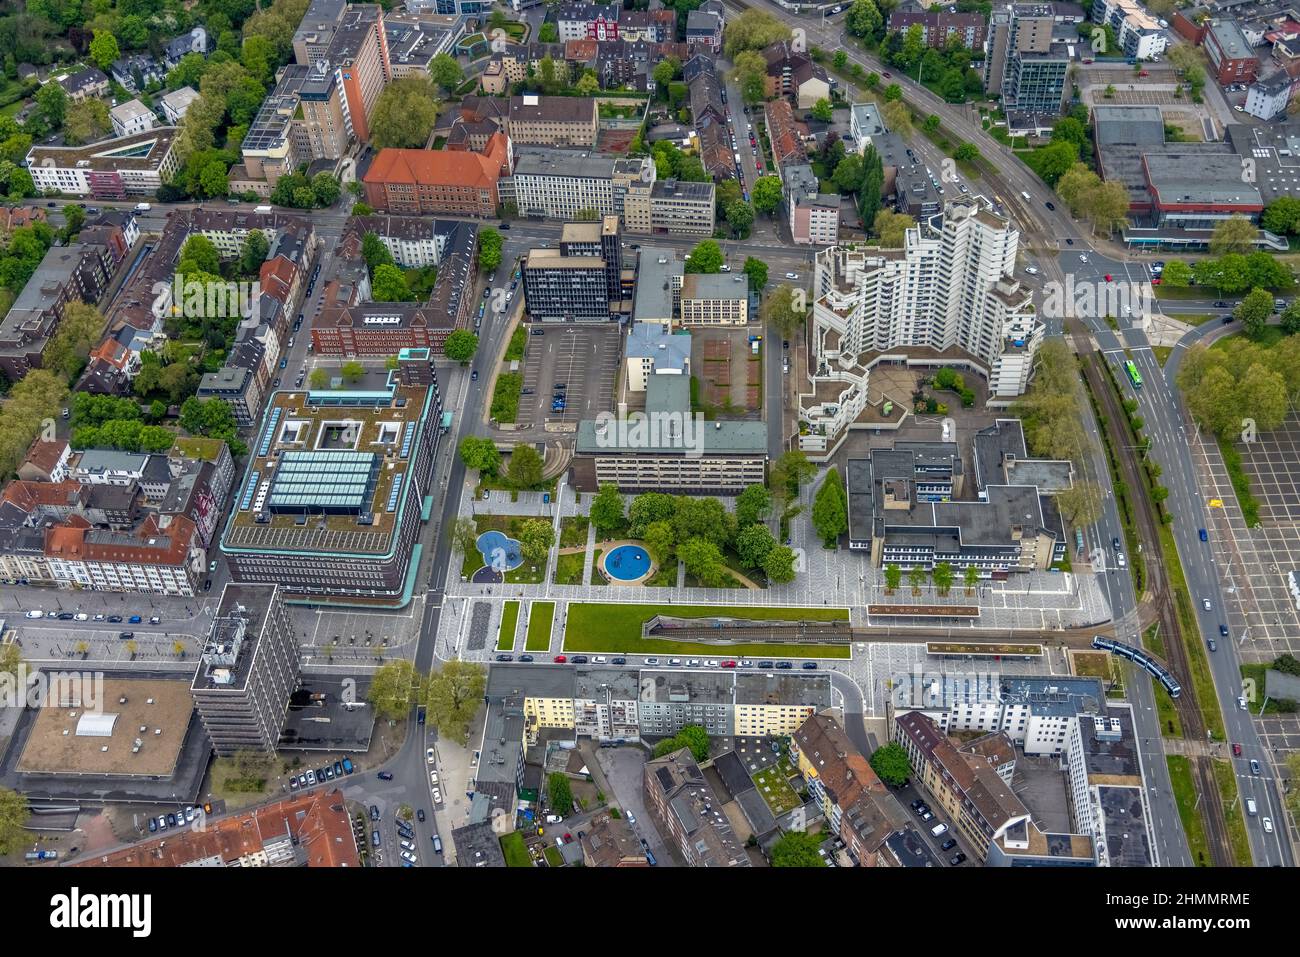 Aerial view, underground tram, Fritz-Rahkob-Platz, old town, town hall, Hans-Sachs-Haus, Gelsenkirchen, Ruhr area, North Rhine-Westphalia, Germany, ed Stock Photo